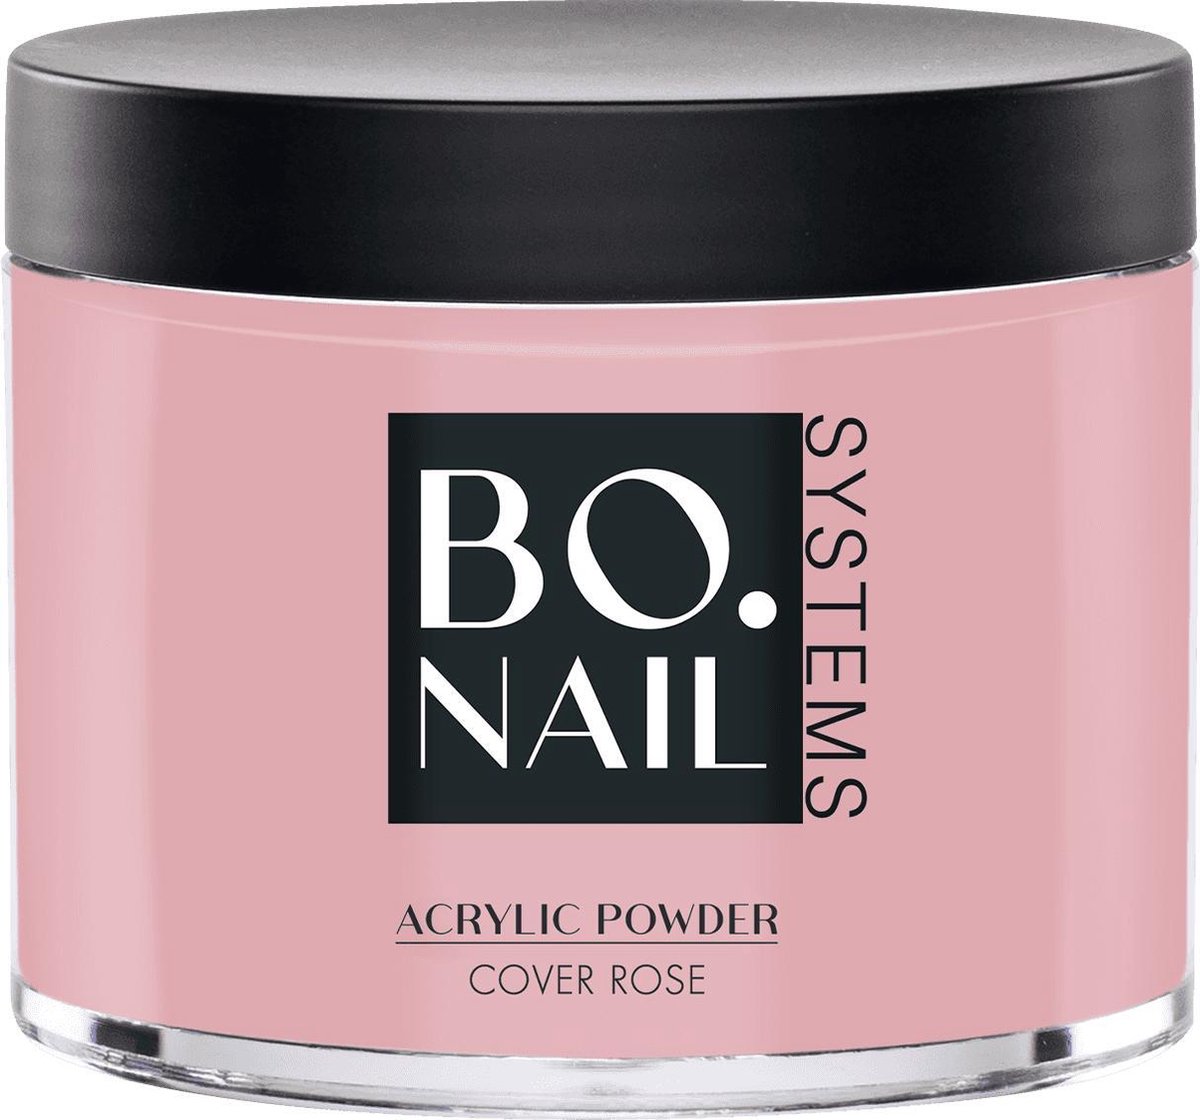 BO.NAIL BO.NAIL Acrylic Powder Cover Rose (100 gr)